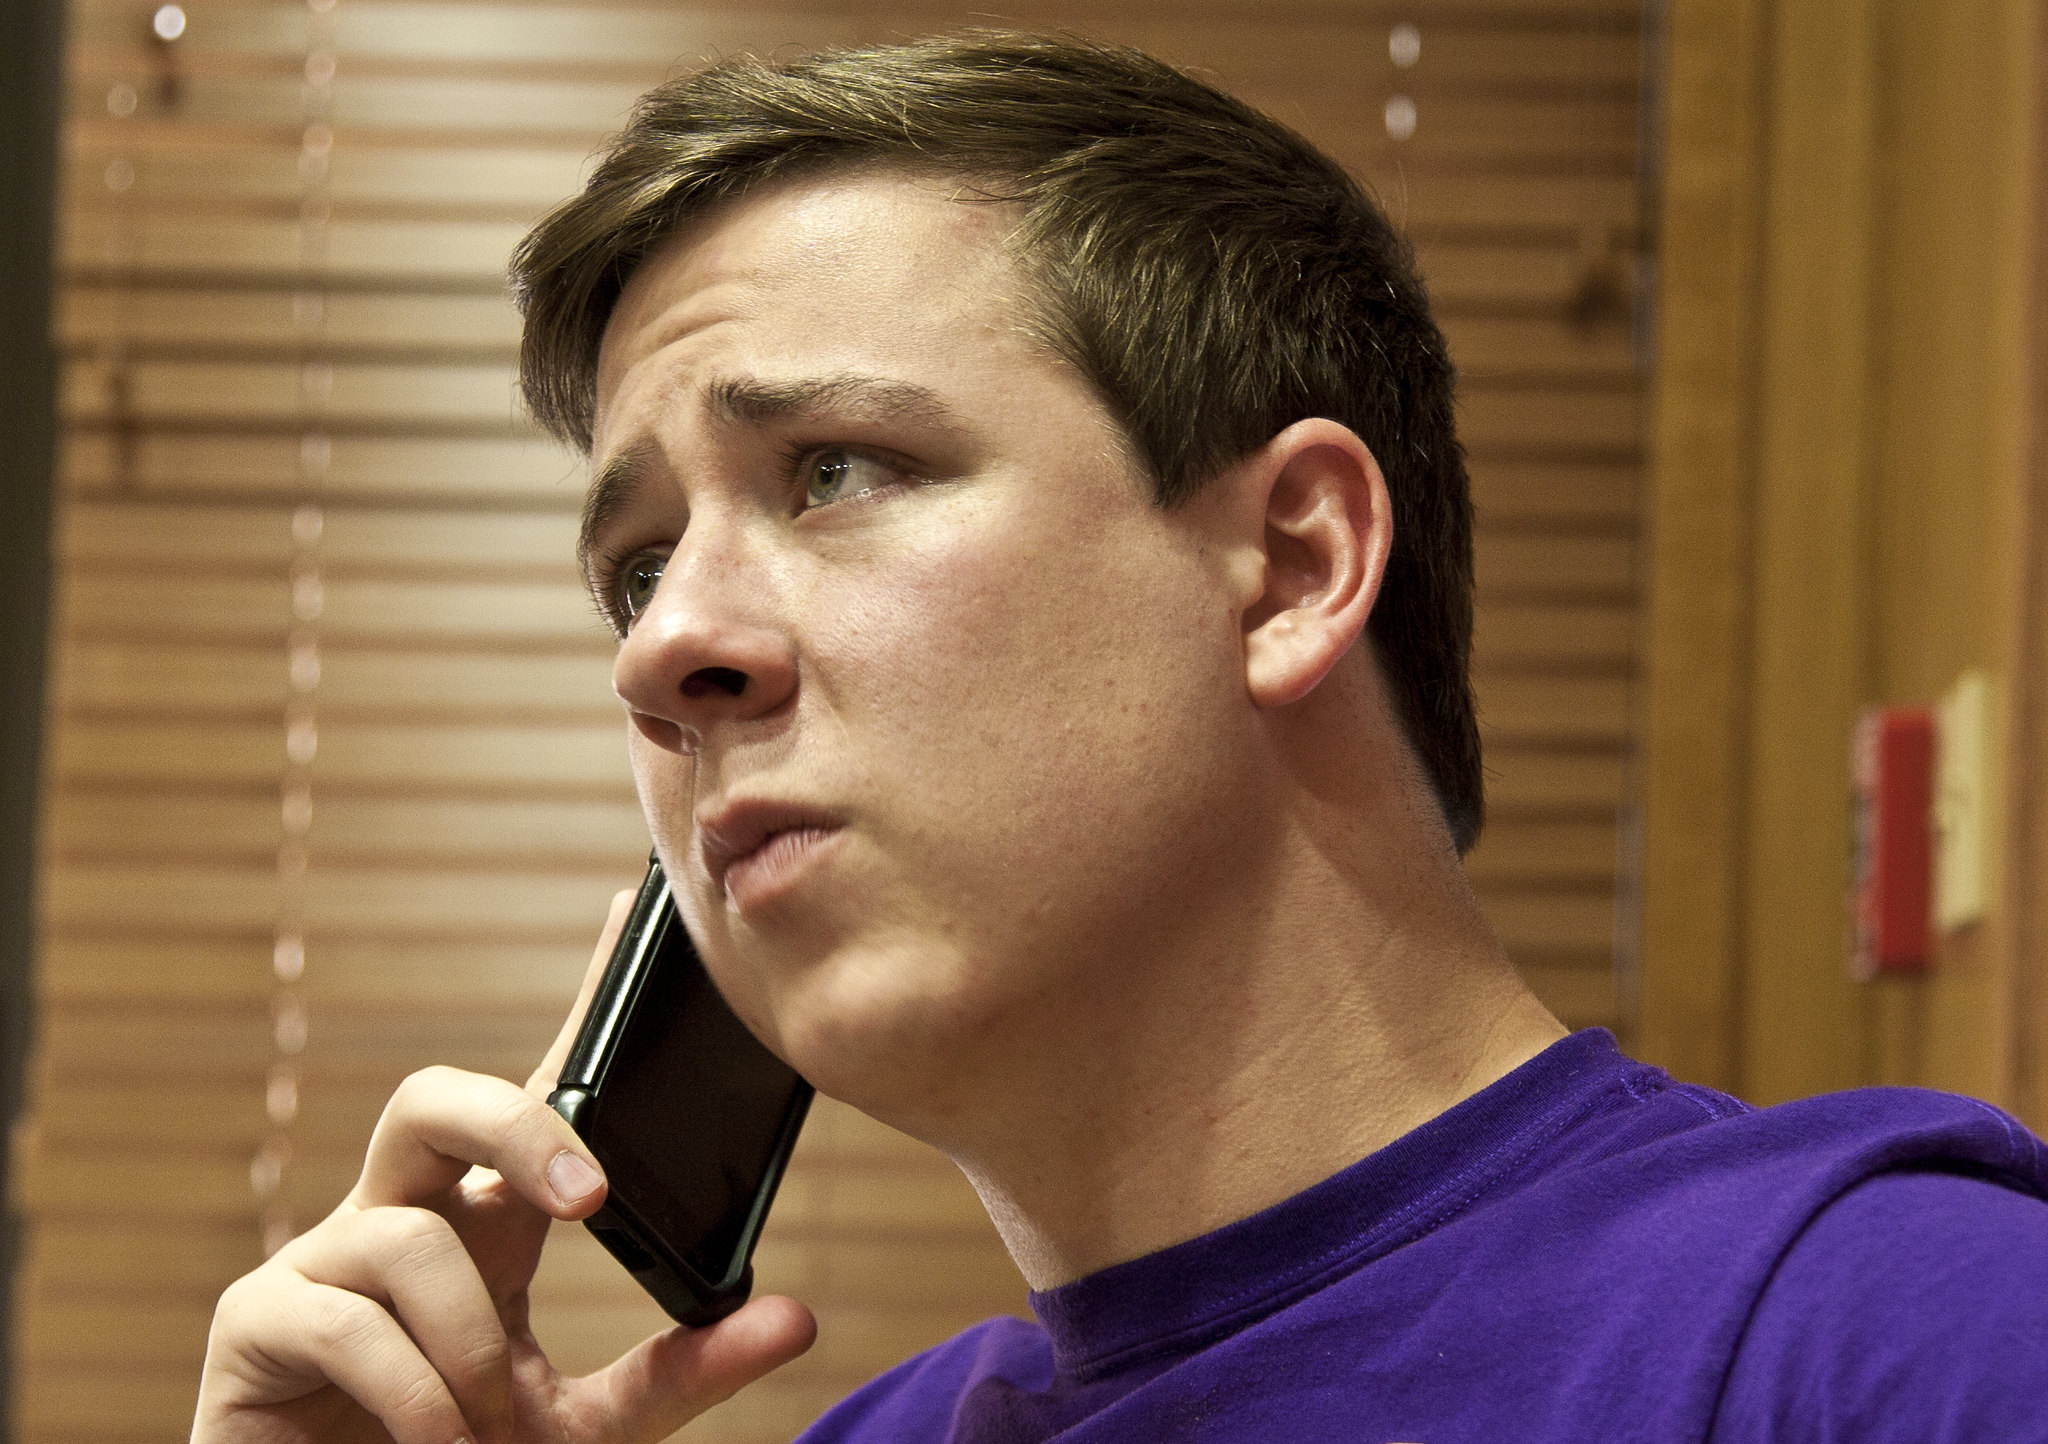 Ein aufgebrachter und reumütiger Mann, der mit jemandem am Telefon spricht | Quelle: Flickr